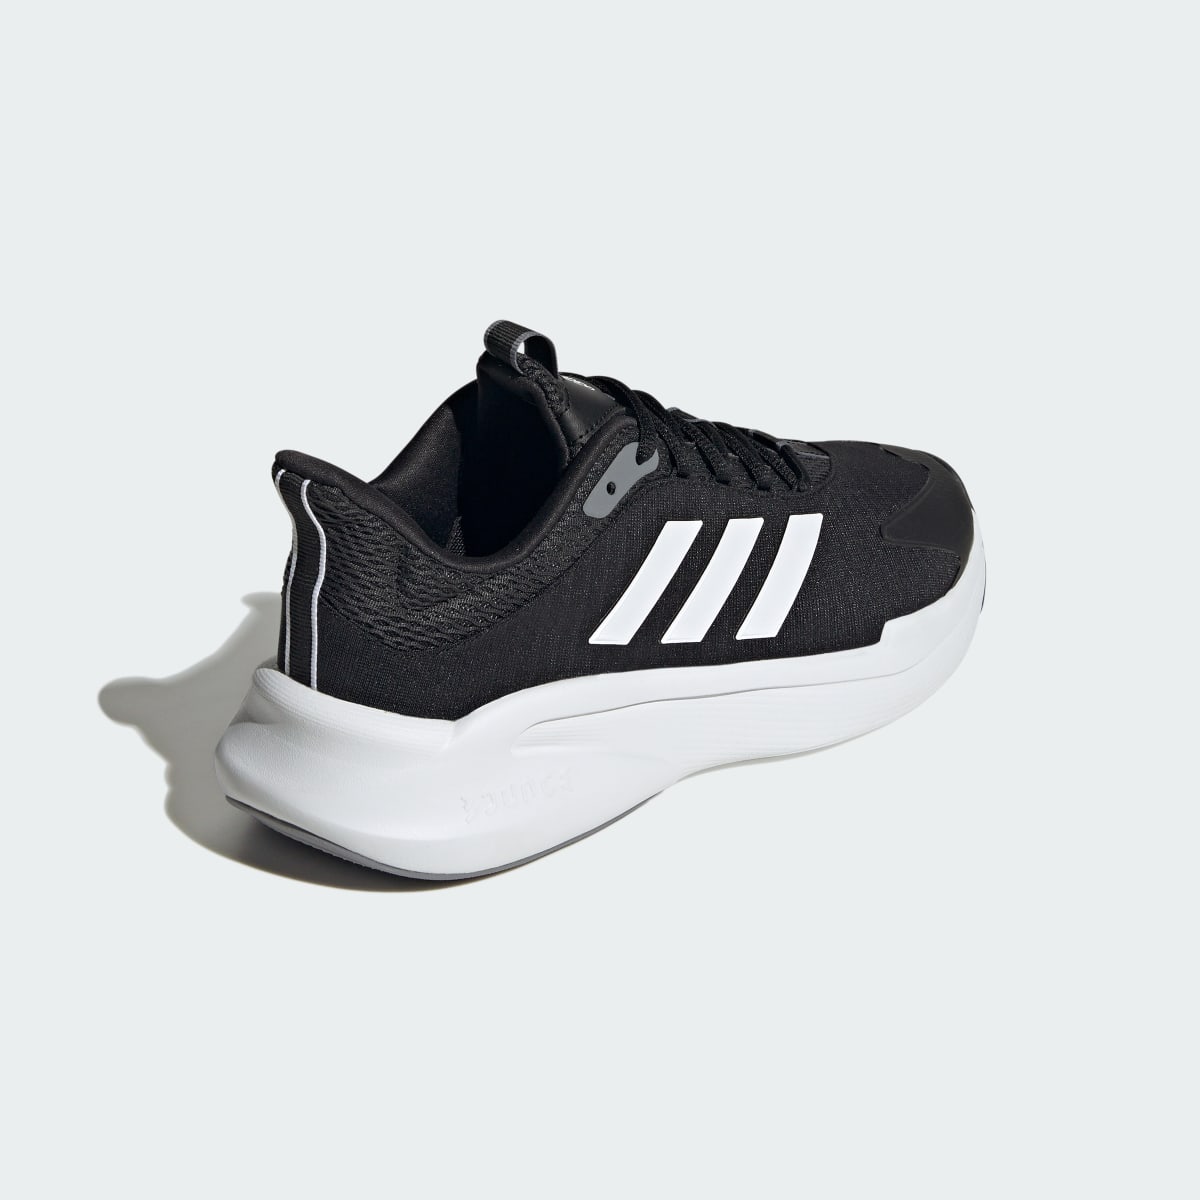 Adidas AlphaEdge + Shoes. 6